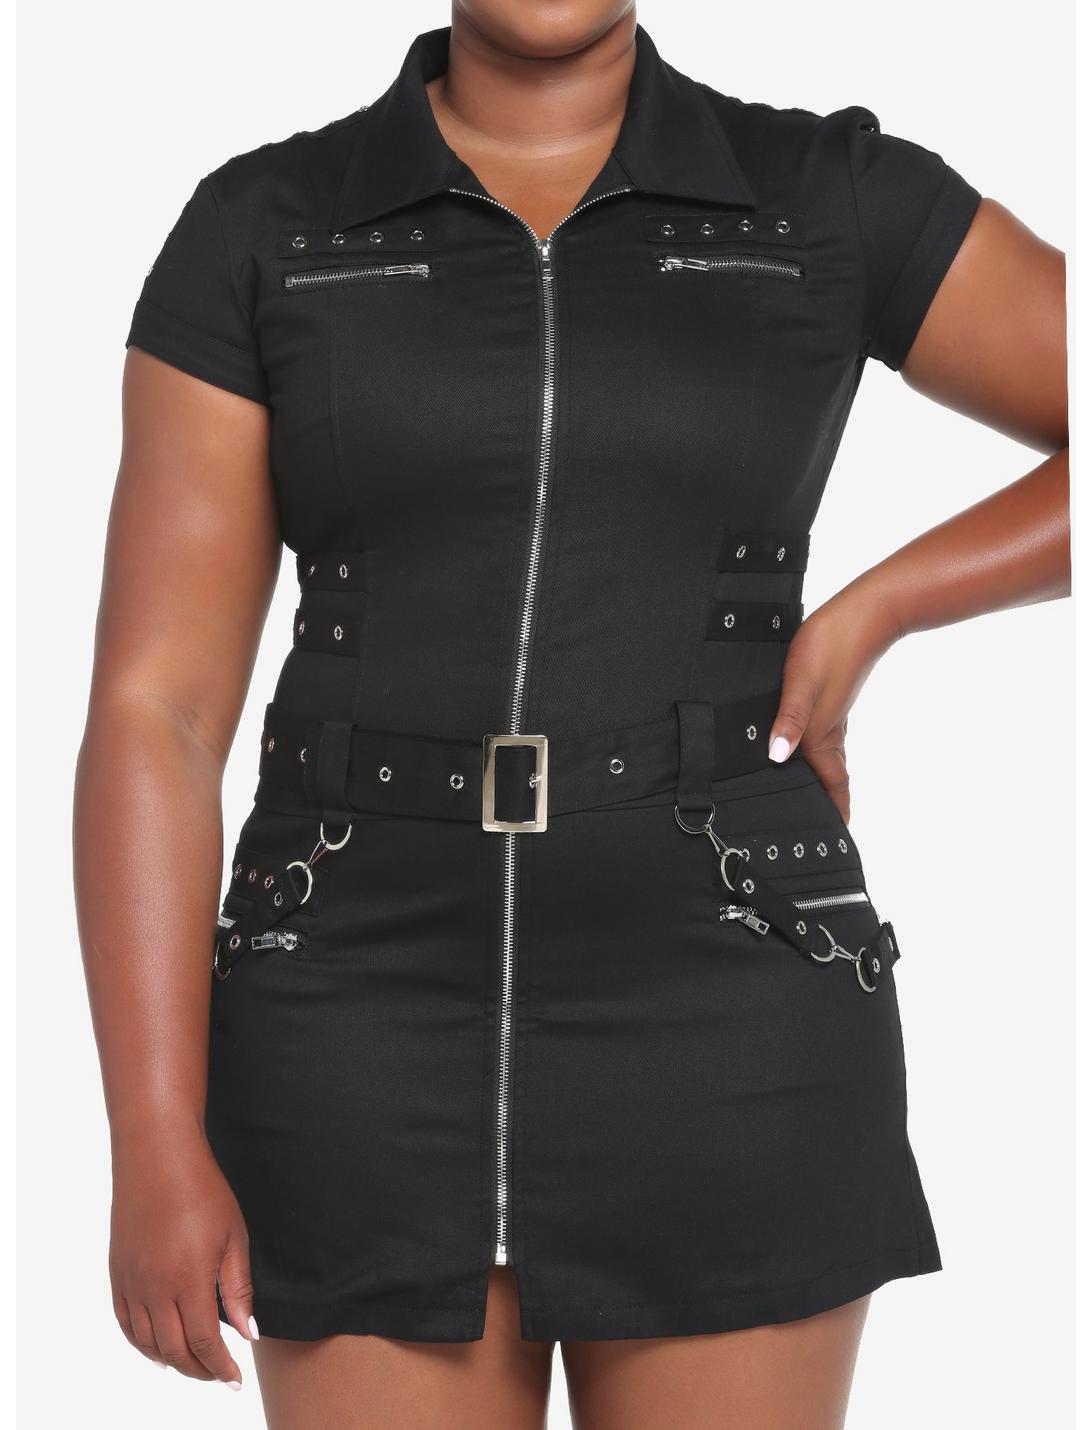 Black Grommets & Straps Zip-Up Dress Plus Size, BLACK, hi-res